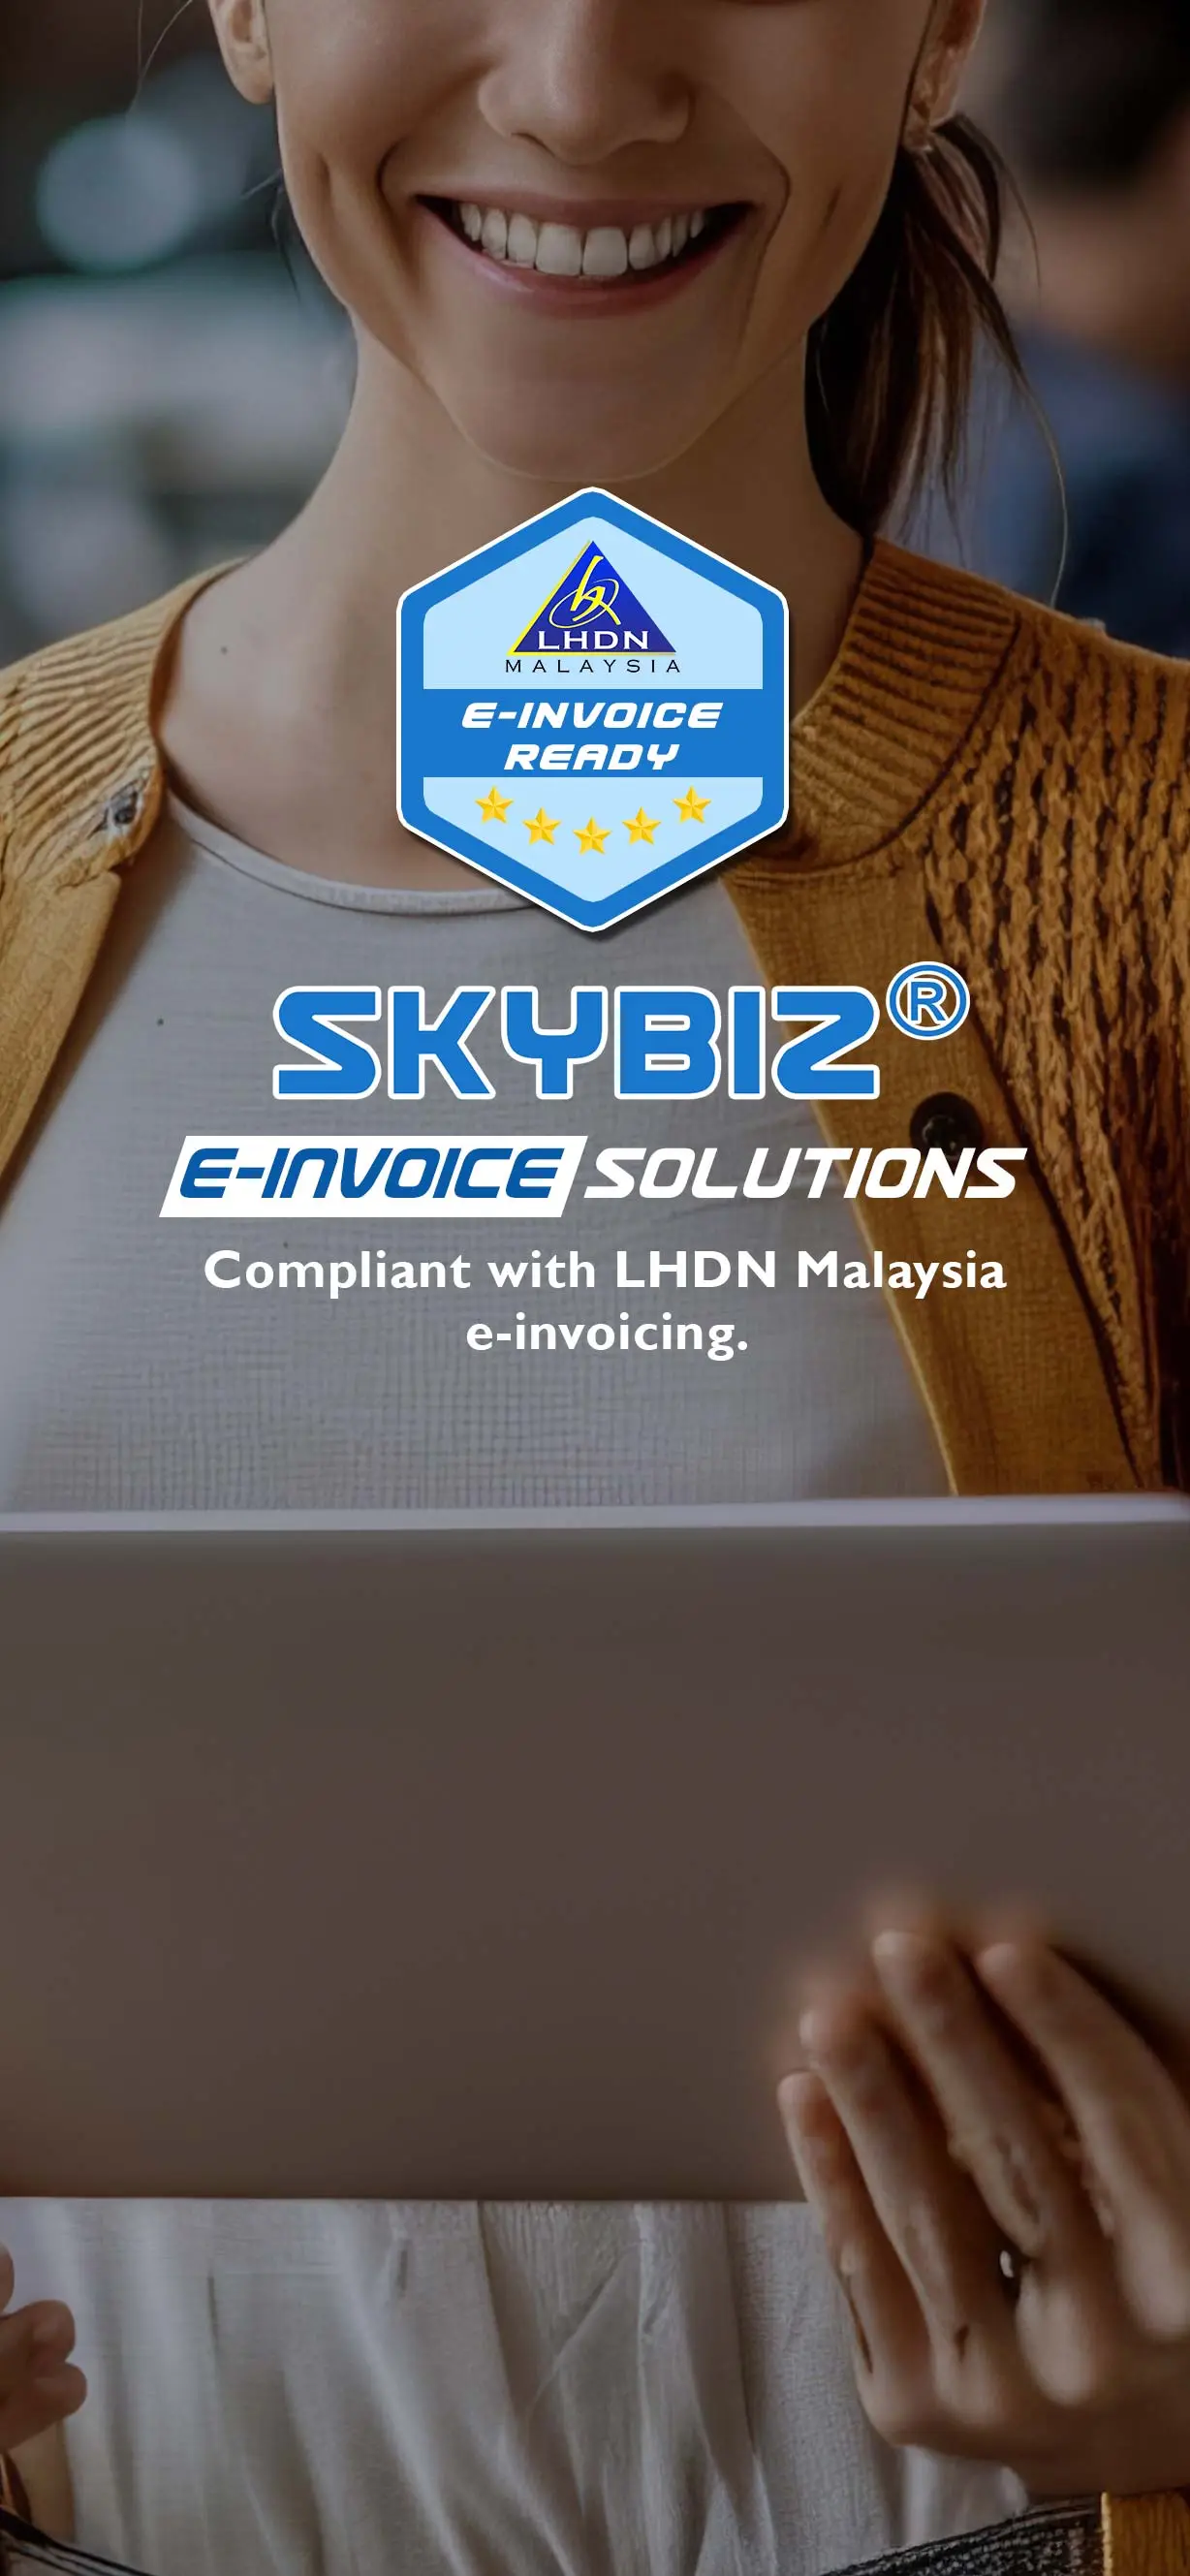 SKYBIZ e-Invoice Ready